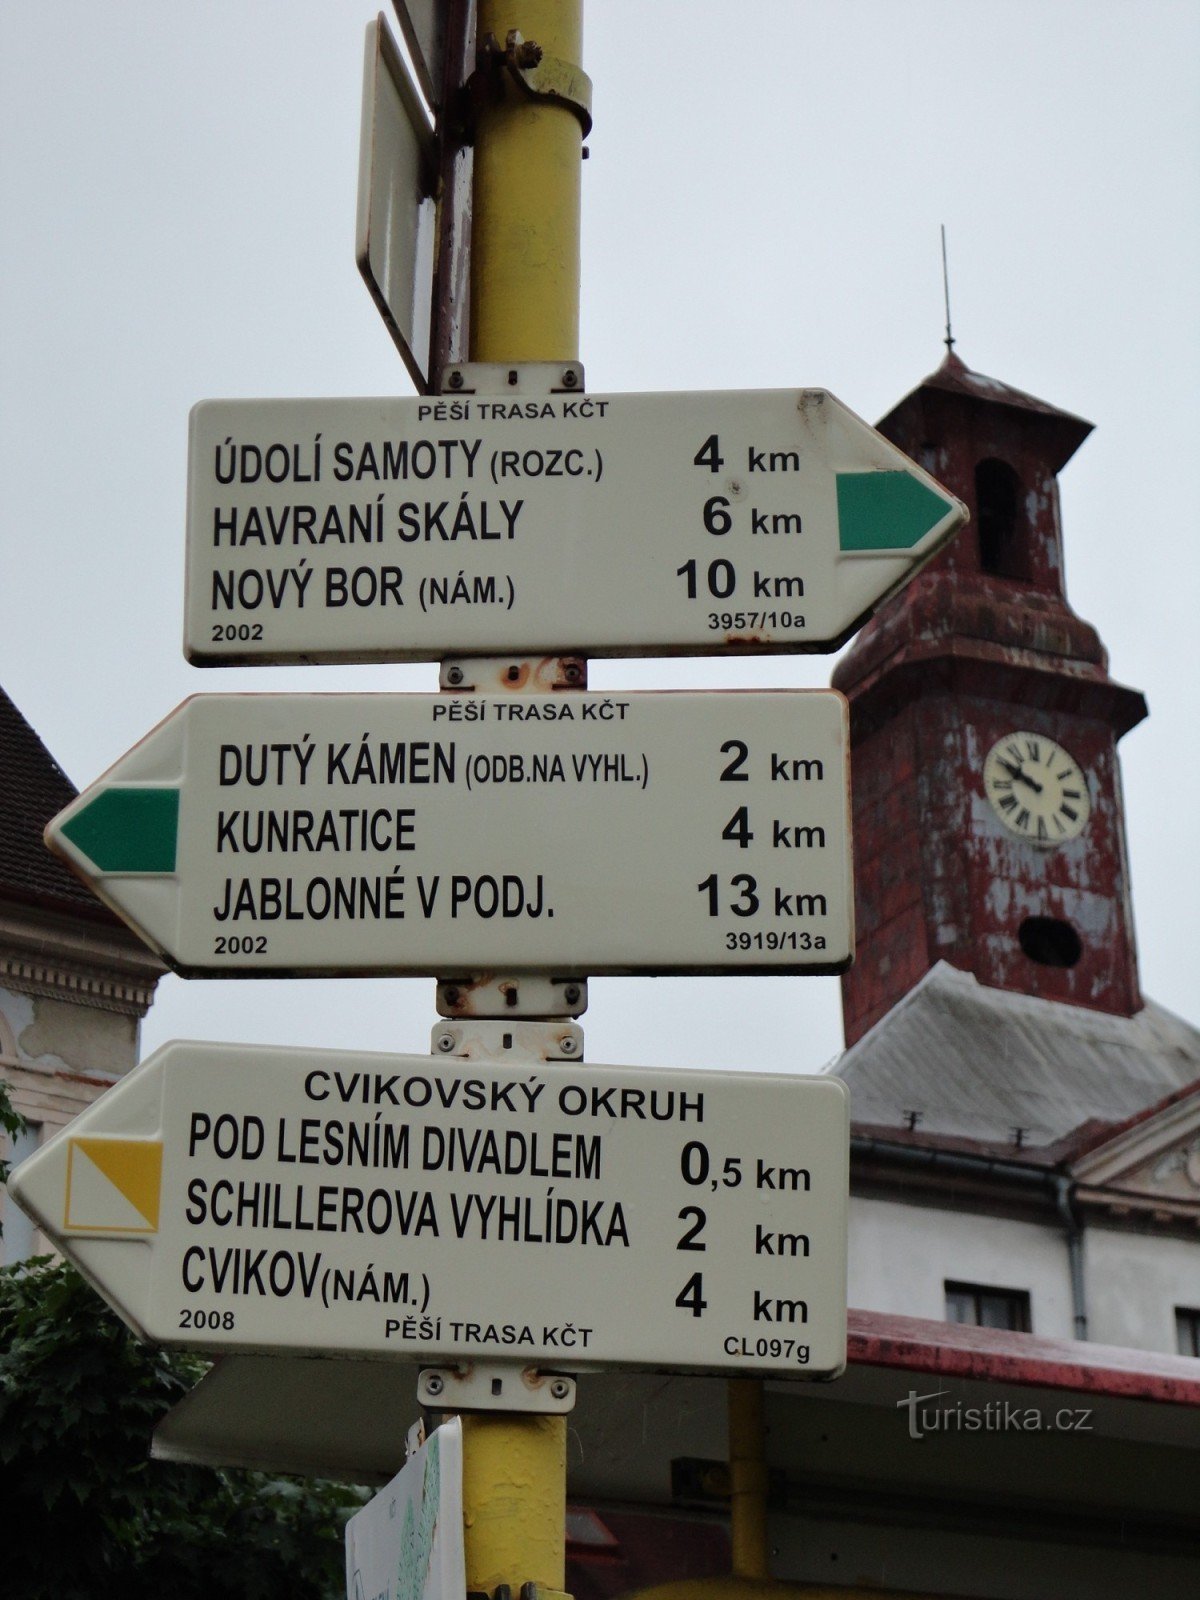 răscruce turistică Cvikov - náměstí